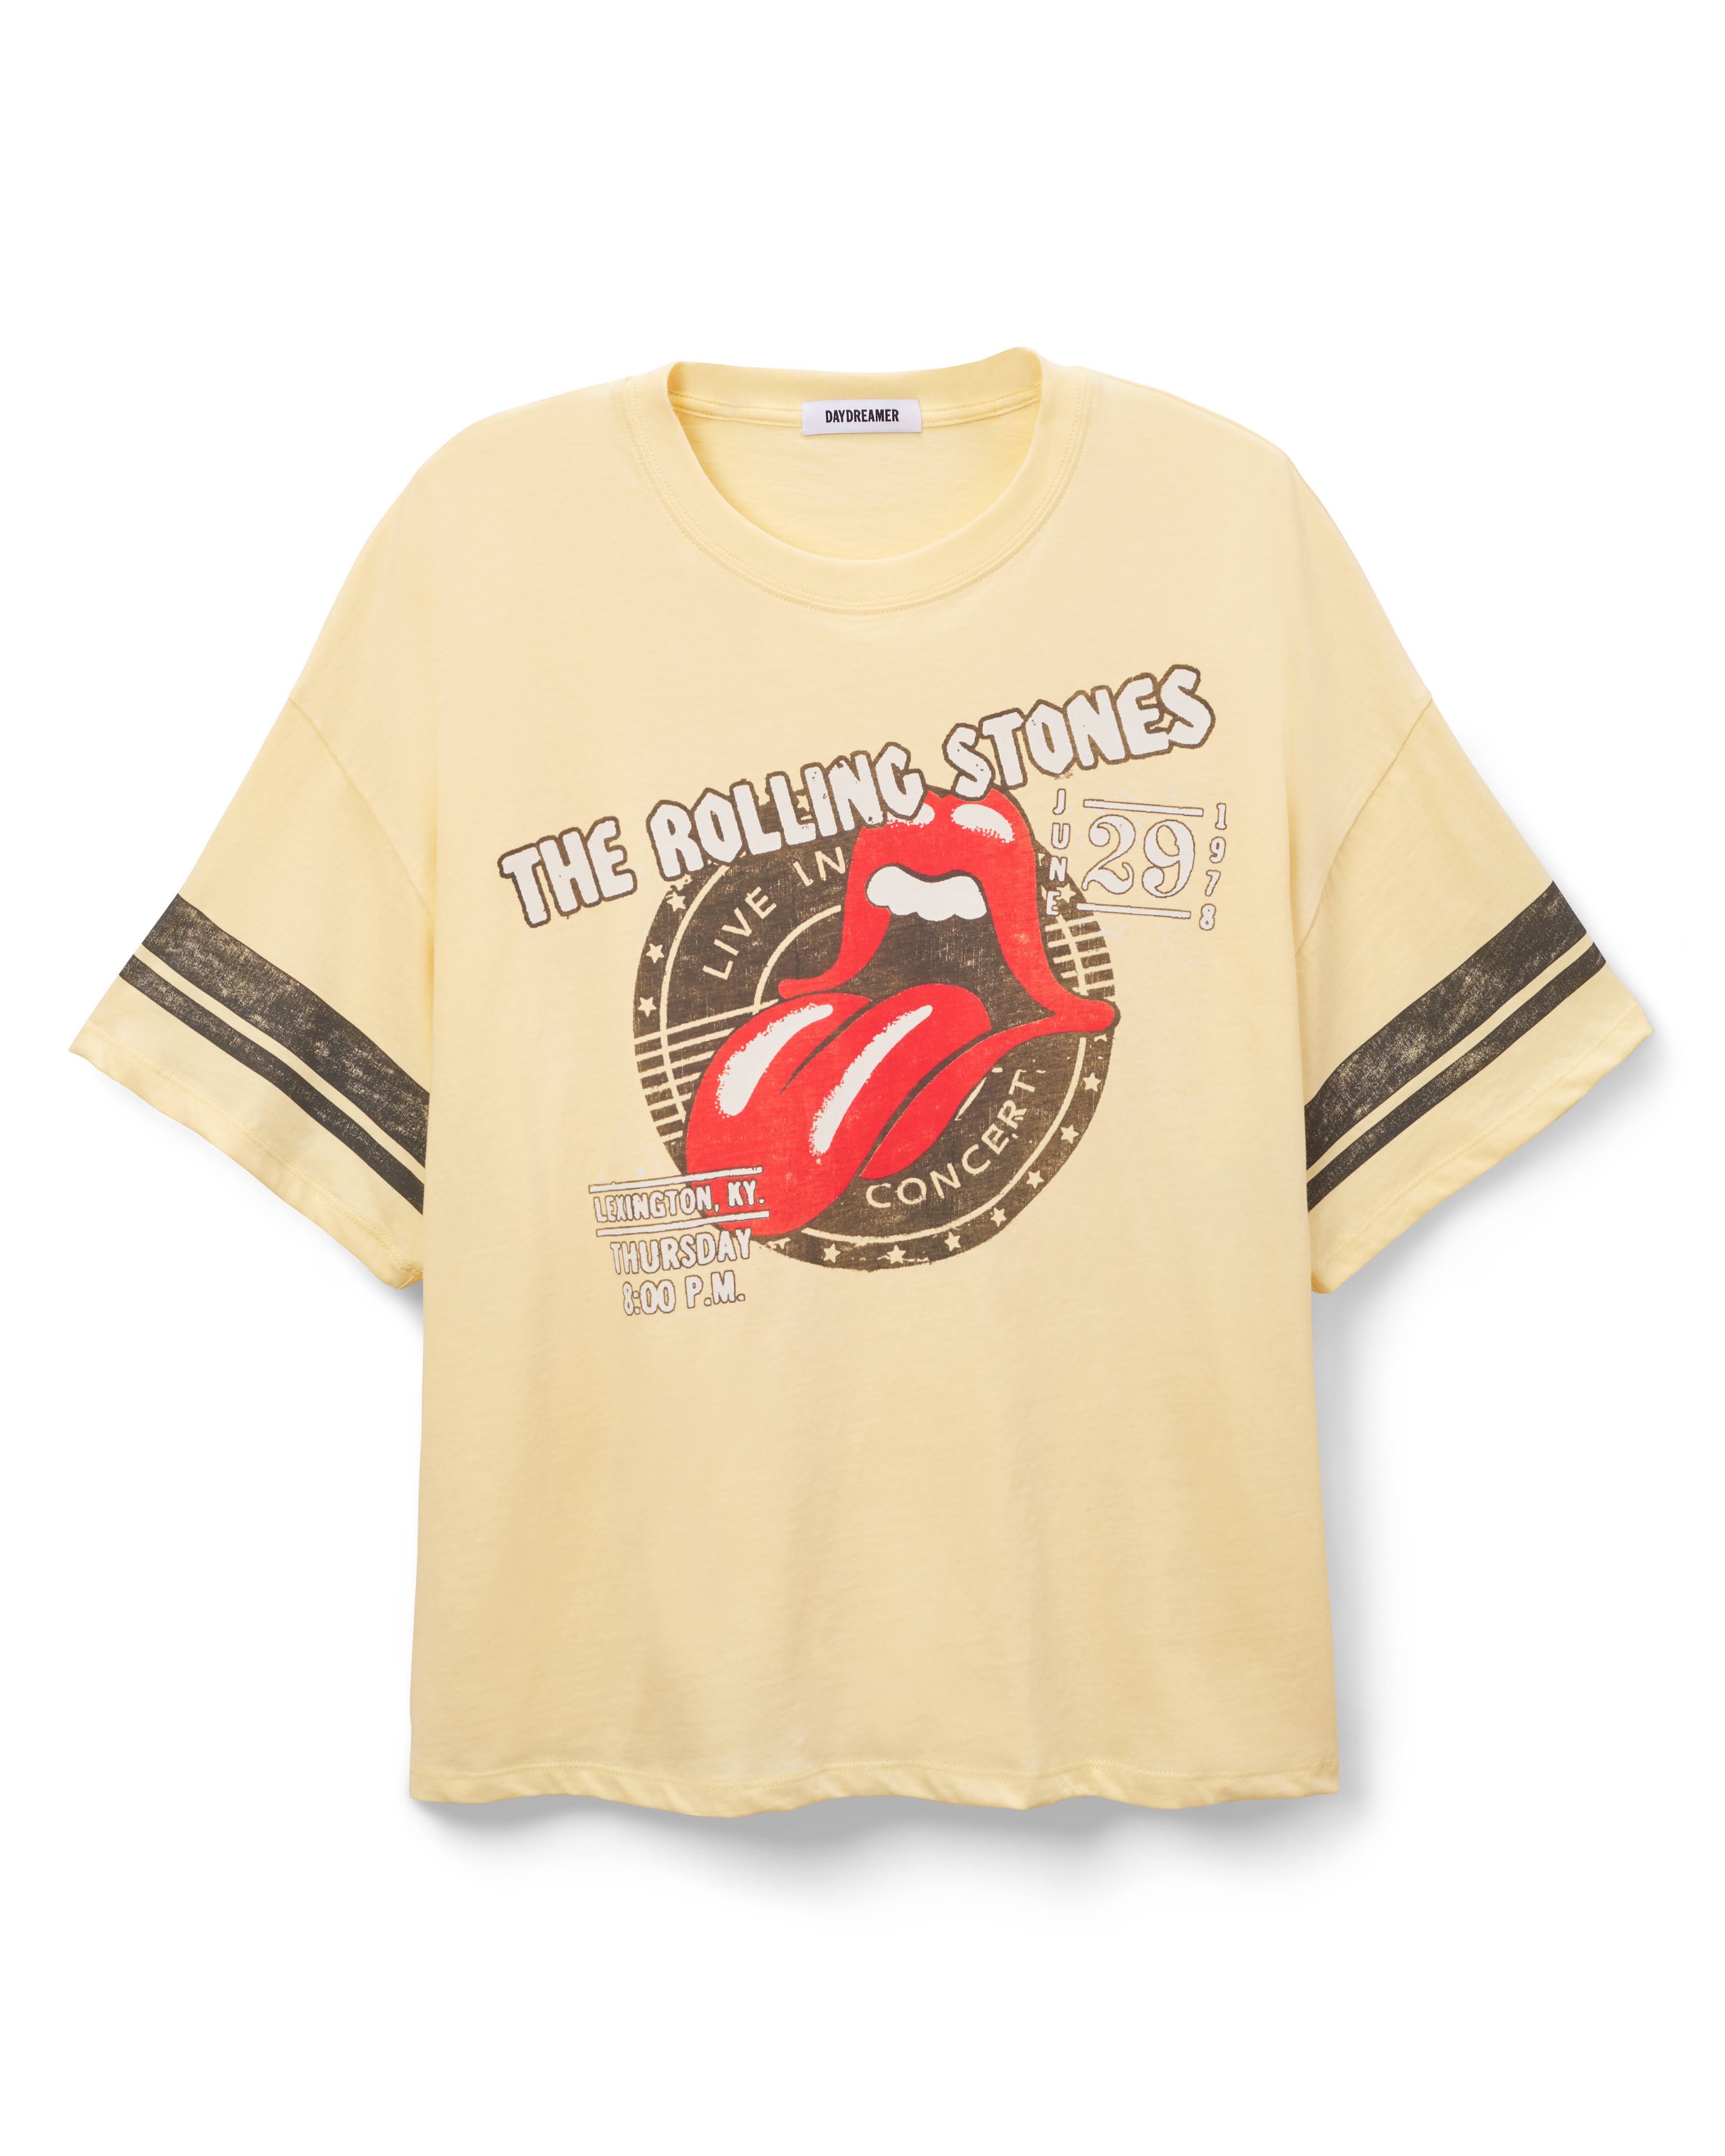 Rolling Stones Concert Stamp Tee